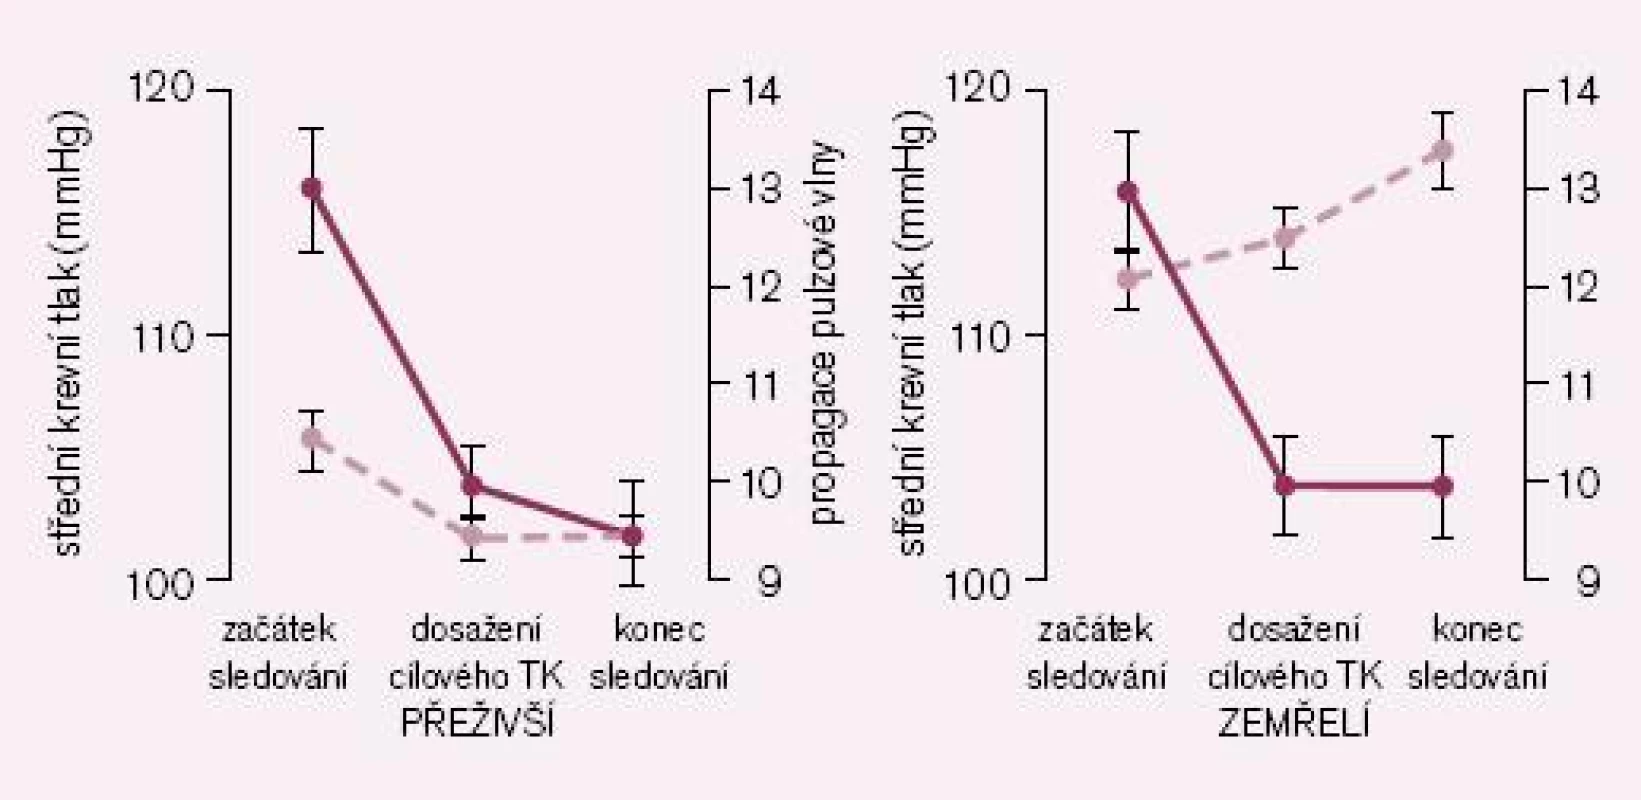 Vliv snížení aortální tuhosti na přežití u nemocných s pokročilým ledvinným selháním. Plná čára ukazuje změny krevního tlaku, přerušovaná čára ukazuje změny rychlosti aortální pulzové vlny. Podle [5].